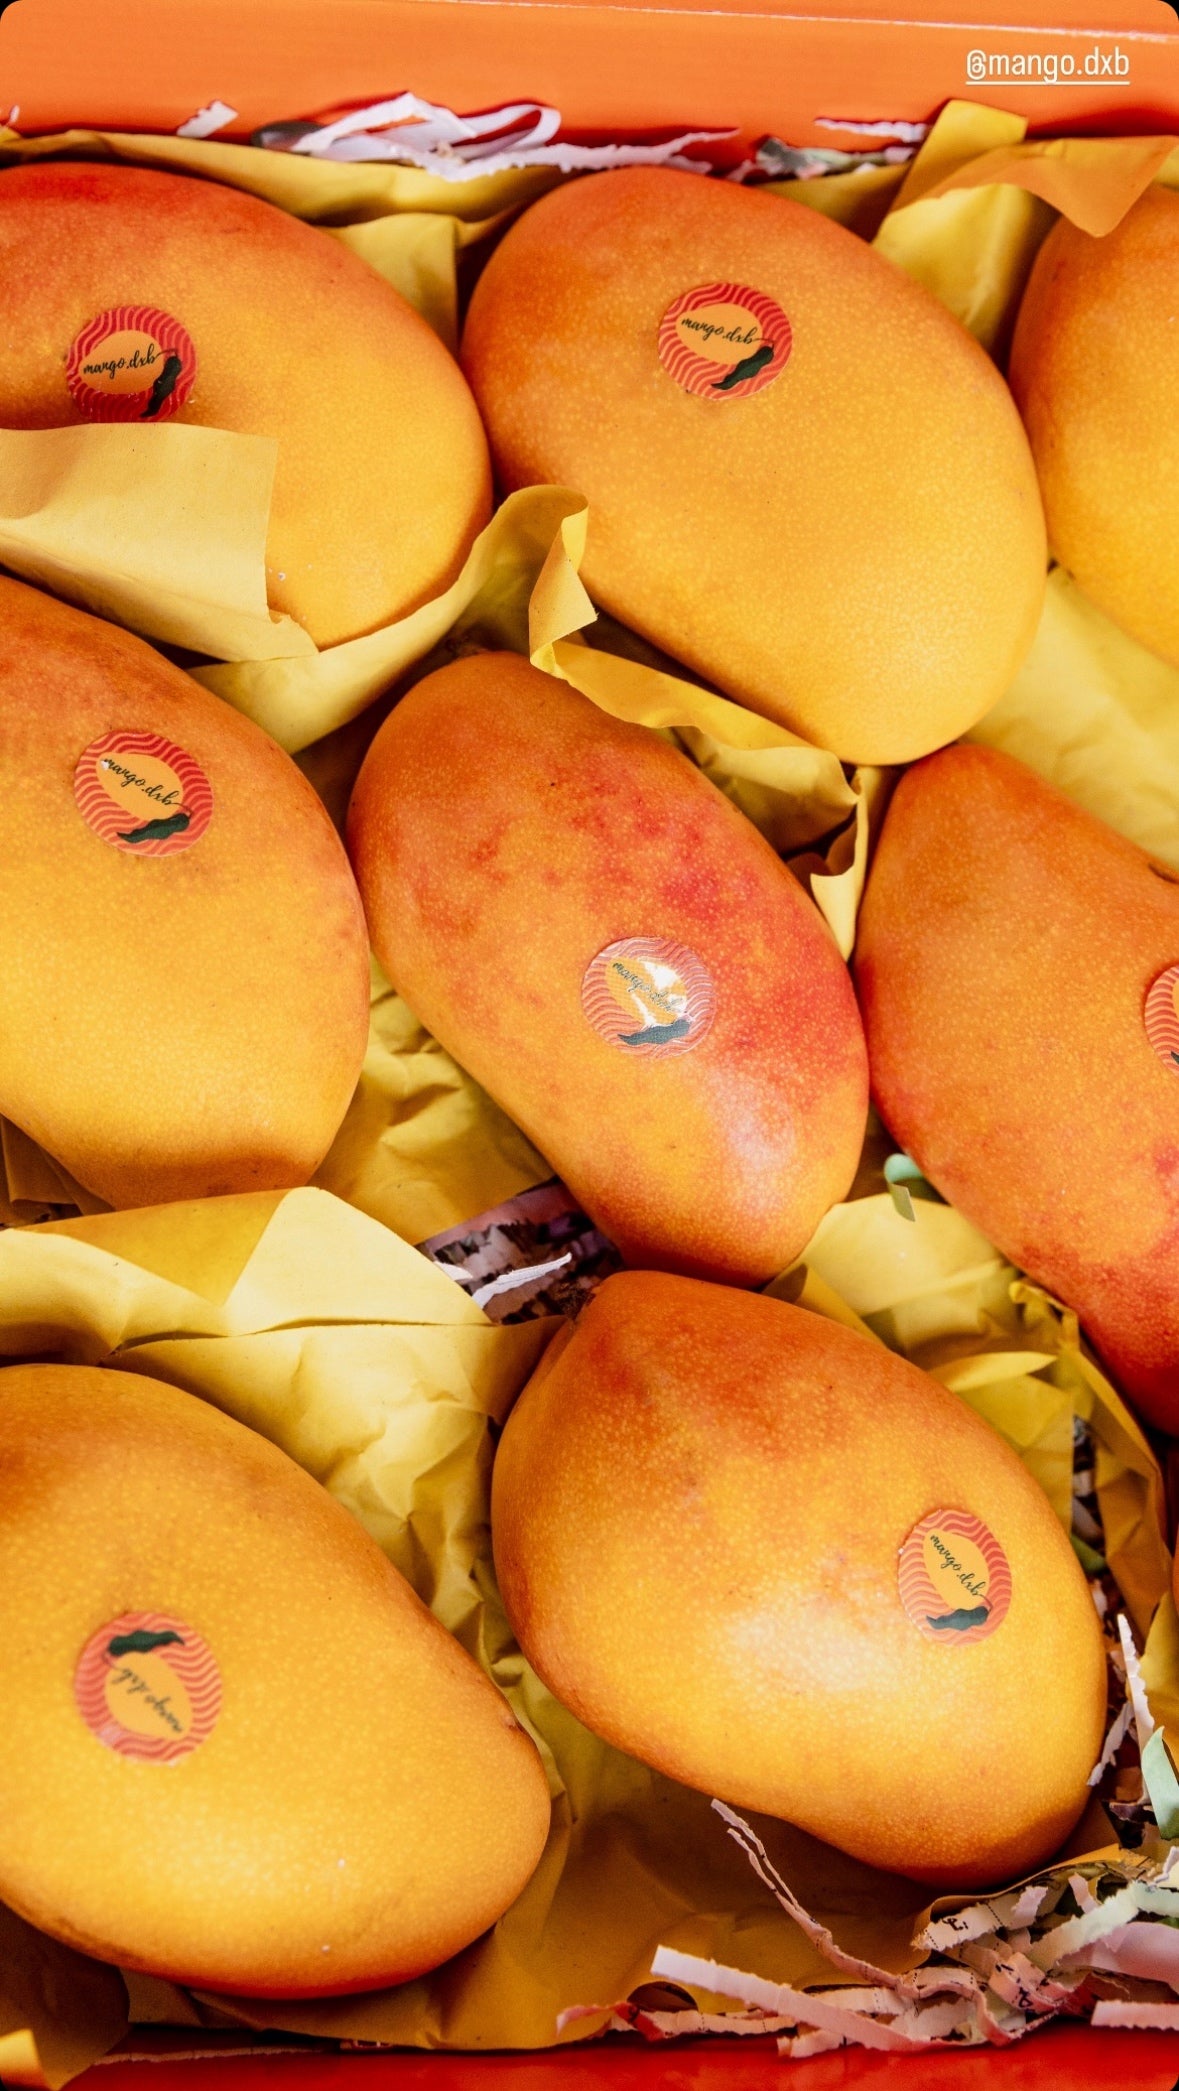 Premium Yemen Mangoes - Box of 9